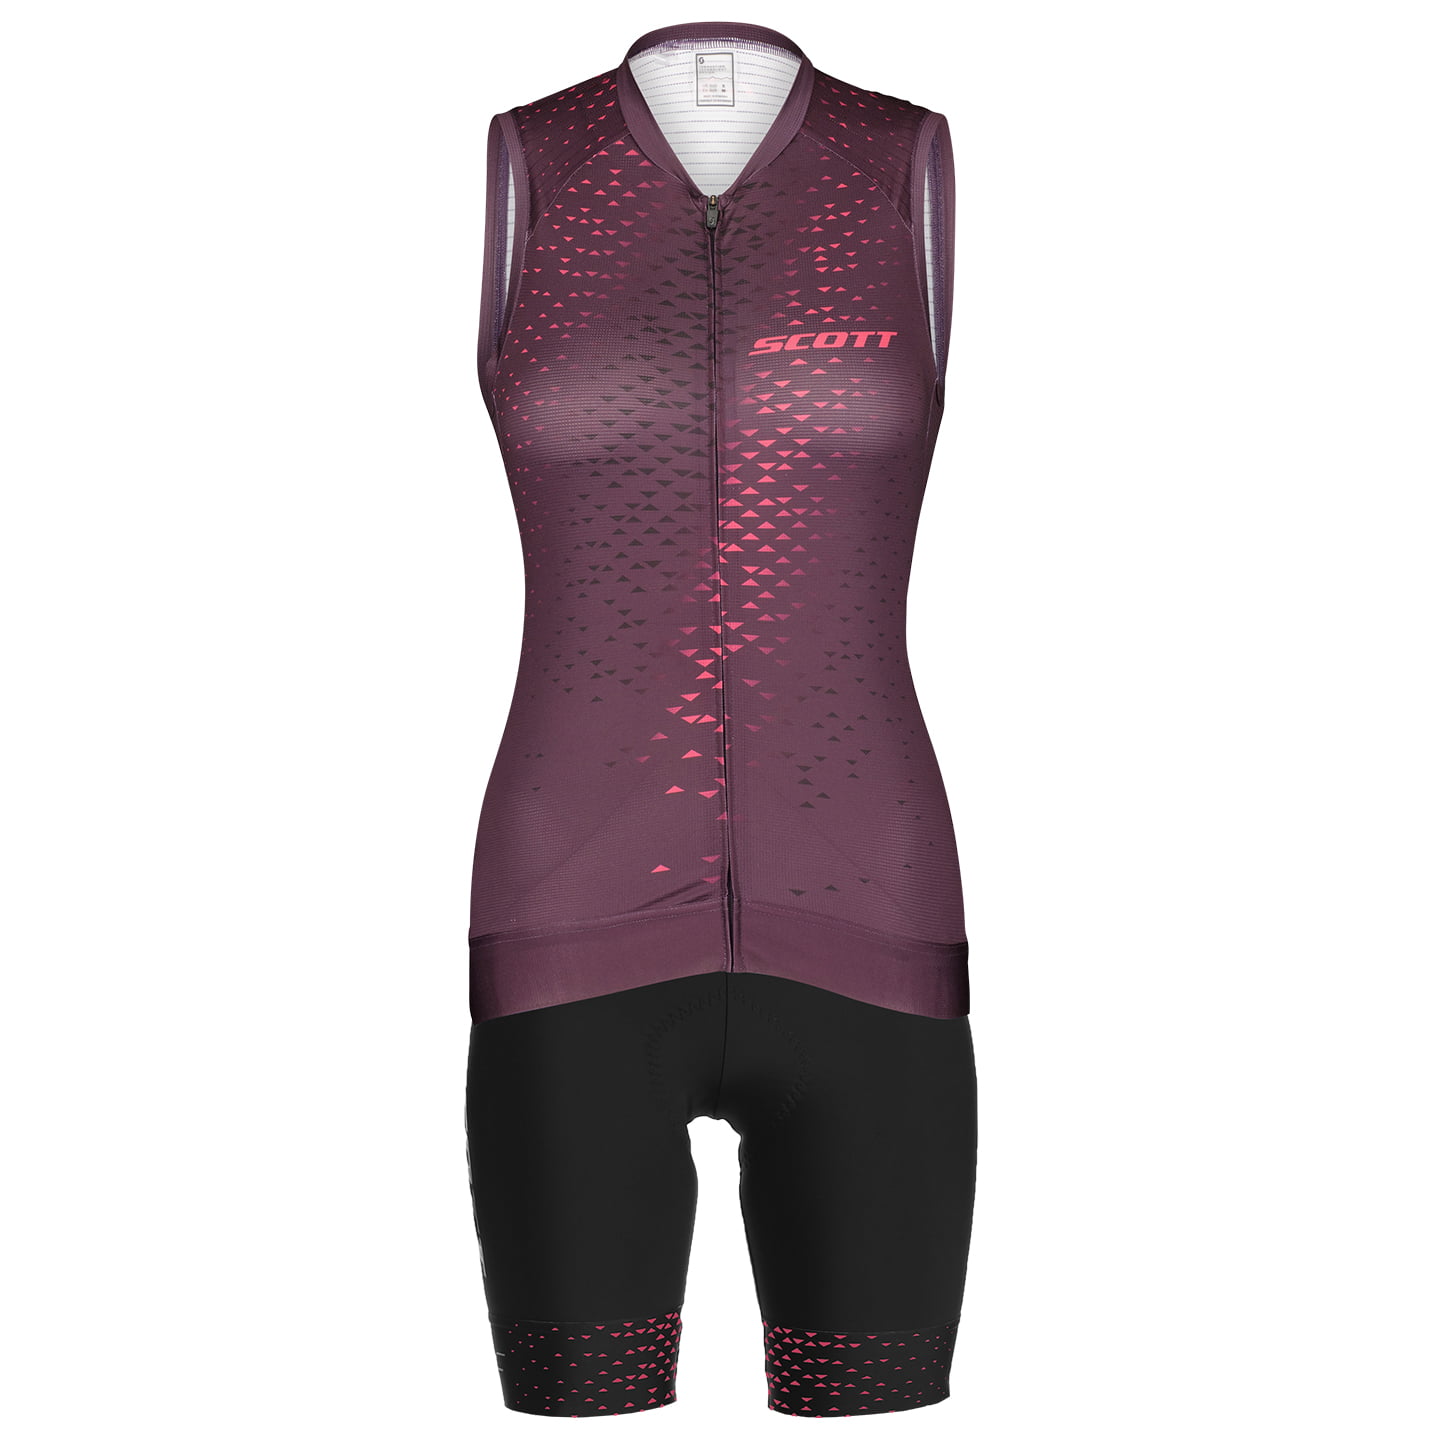 SCOTT RC Pro Women’s Set (cycling jersey + cycling shorts) Women’s Set (2 pieces), Cycling clothing